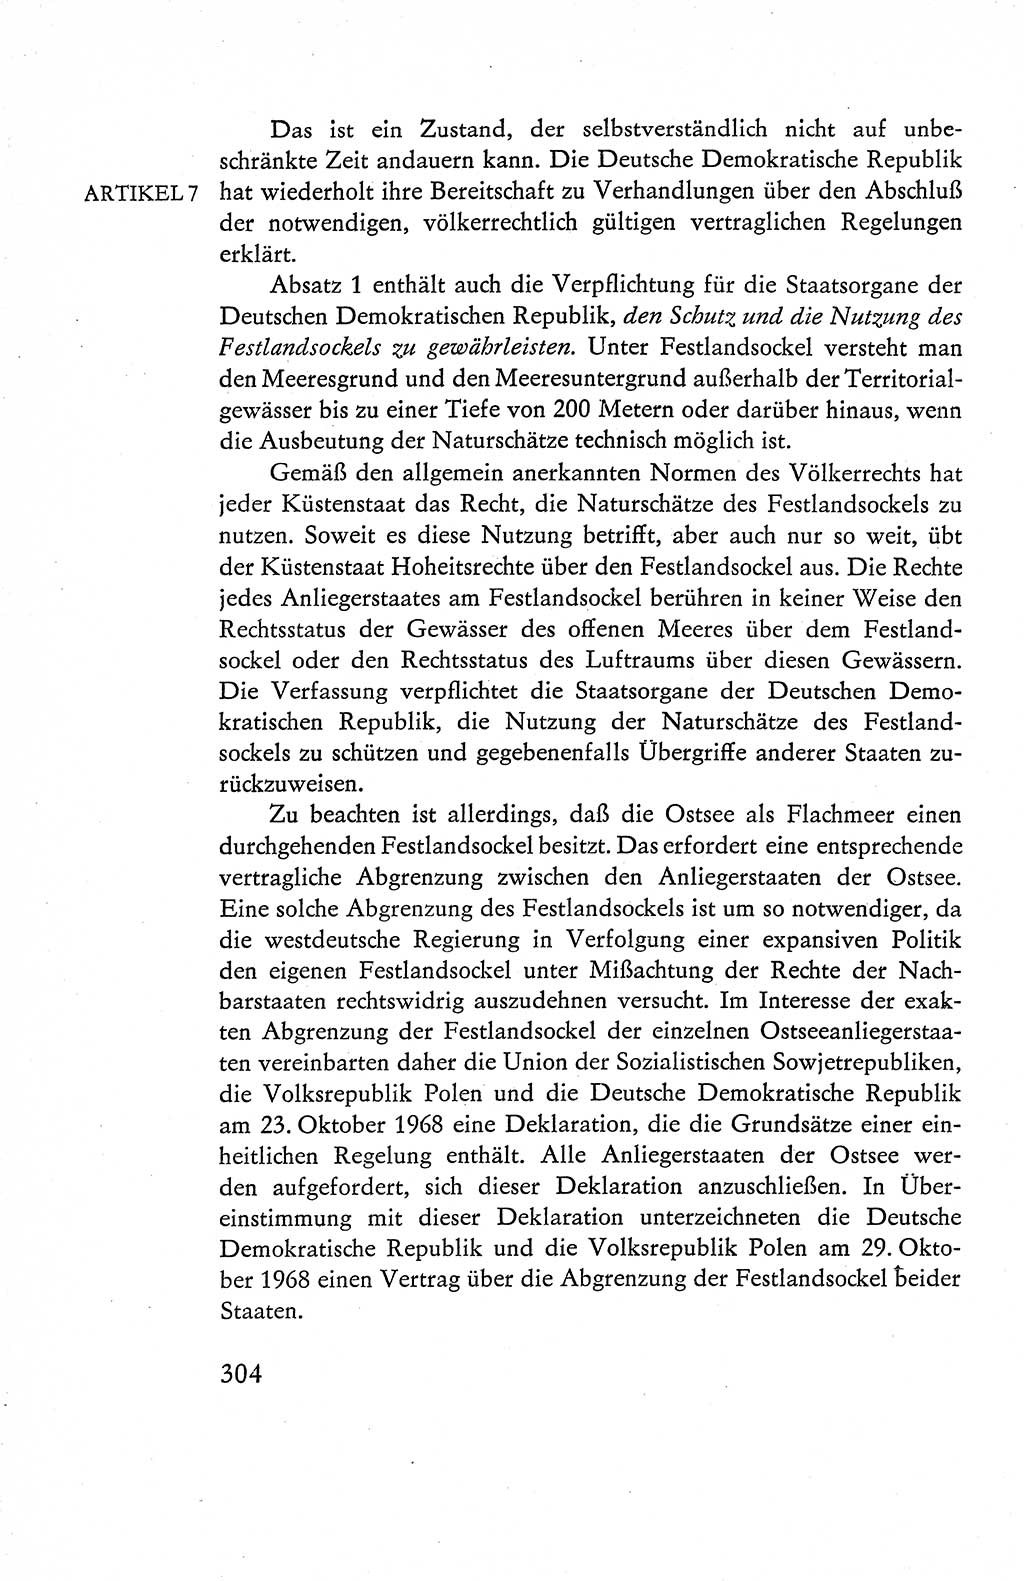 Verfassung der Deutschen Demokratischen Republik (DDR), Dokumente, Kommentar 1969, Band 1, Seite 304 (Verf. DDR Dok. Komm. 1969, Bd. 1, S. 304)